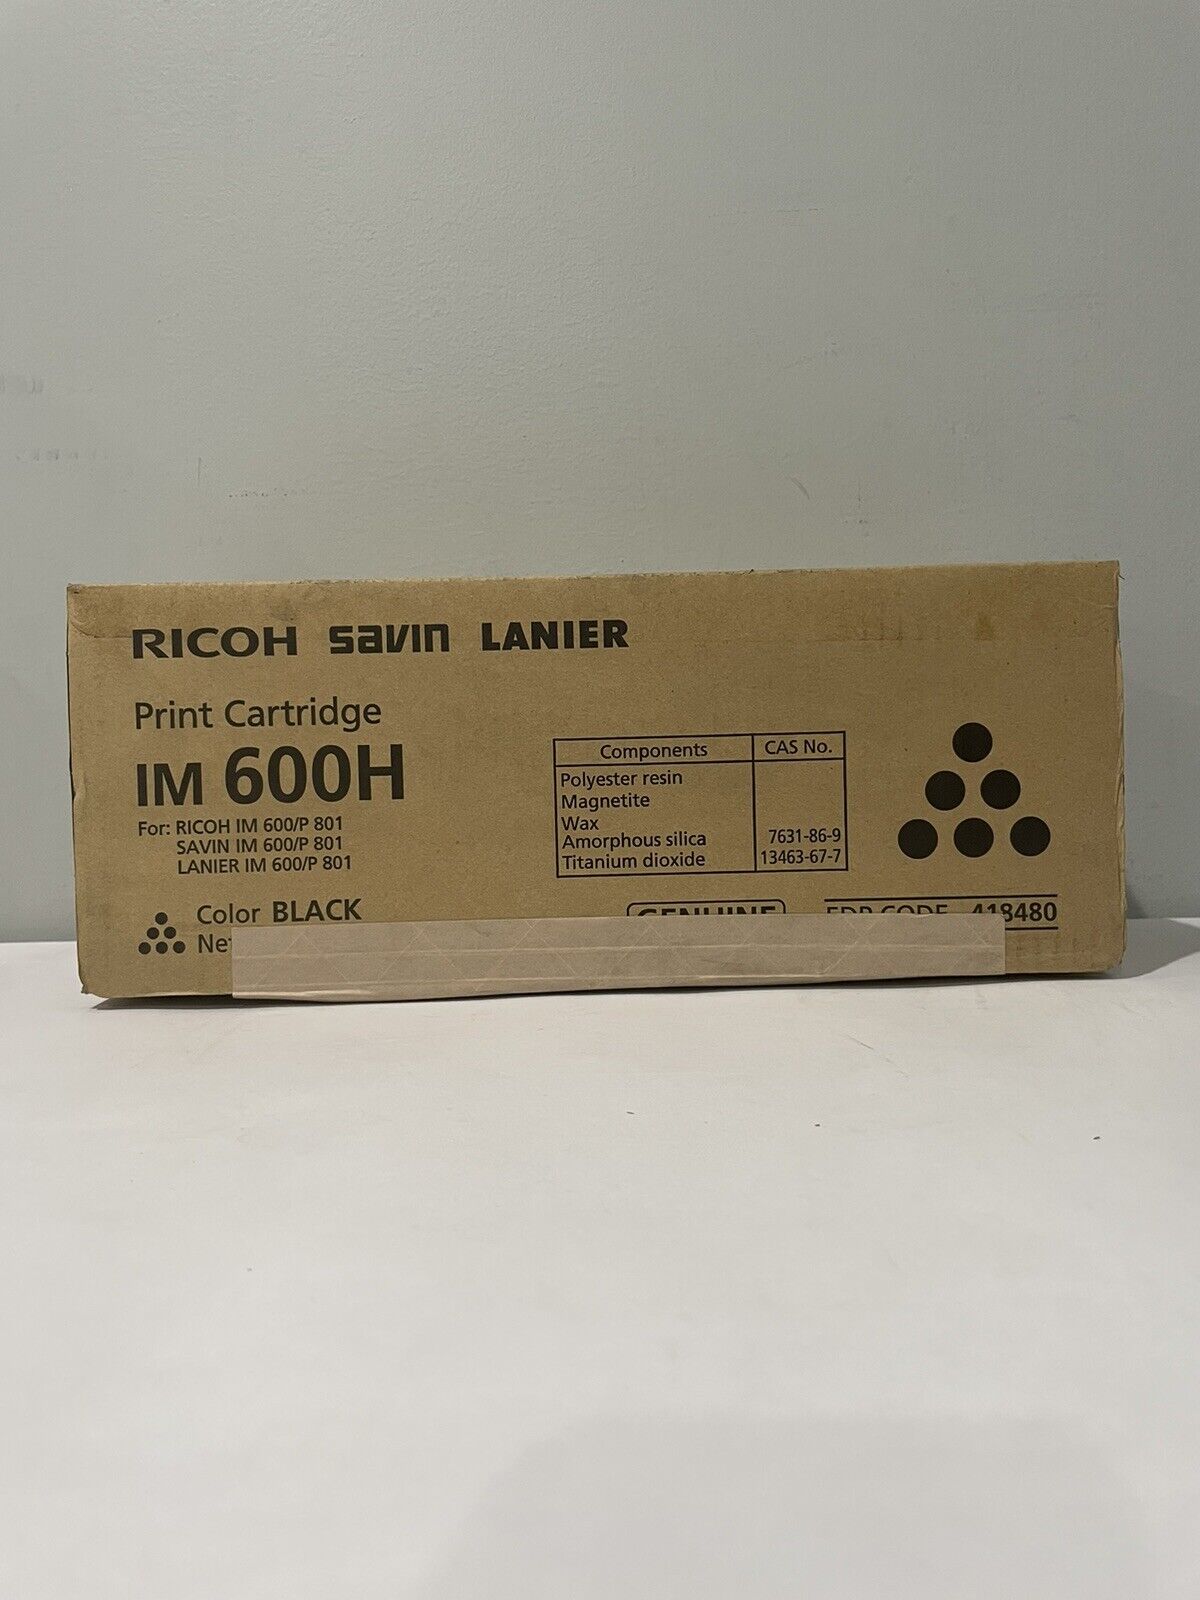 Ricoh IM 600H Black Print Cartridge  418480 for Ricoh IM 600/P 801 New